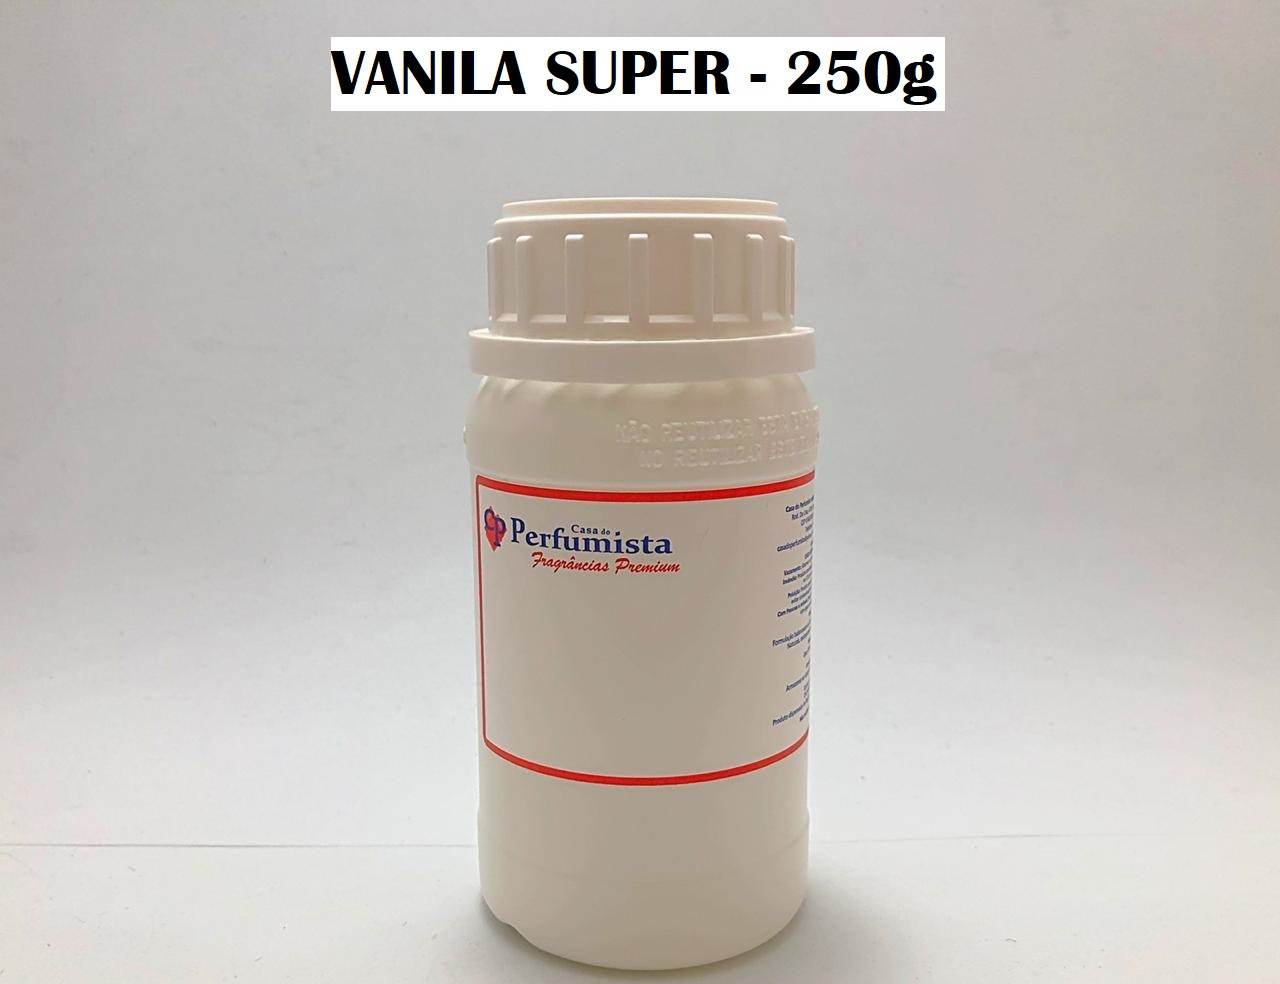 VANILA SUPER - 250g